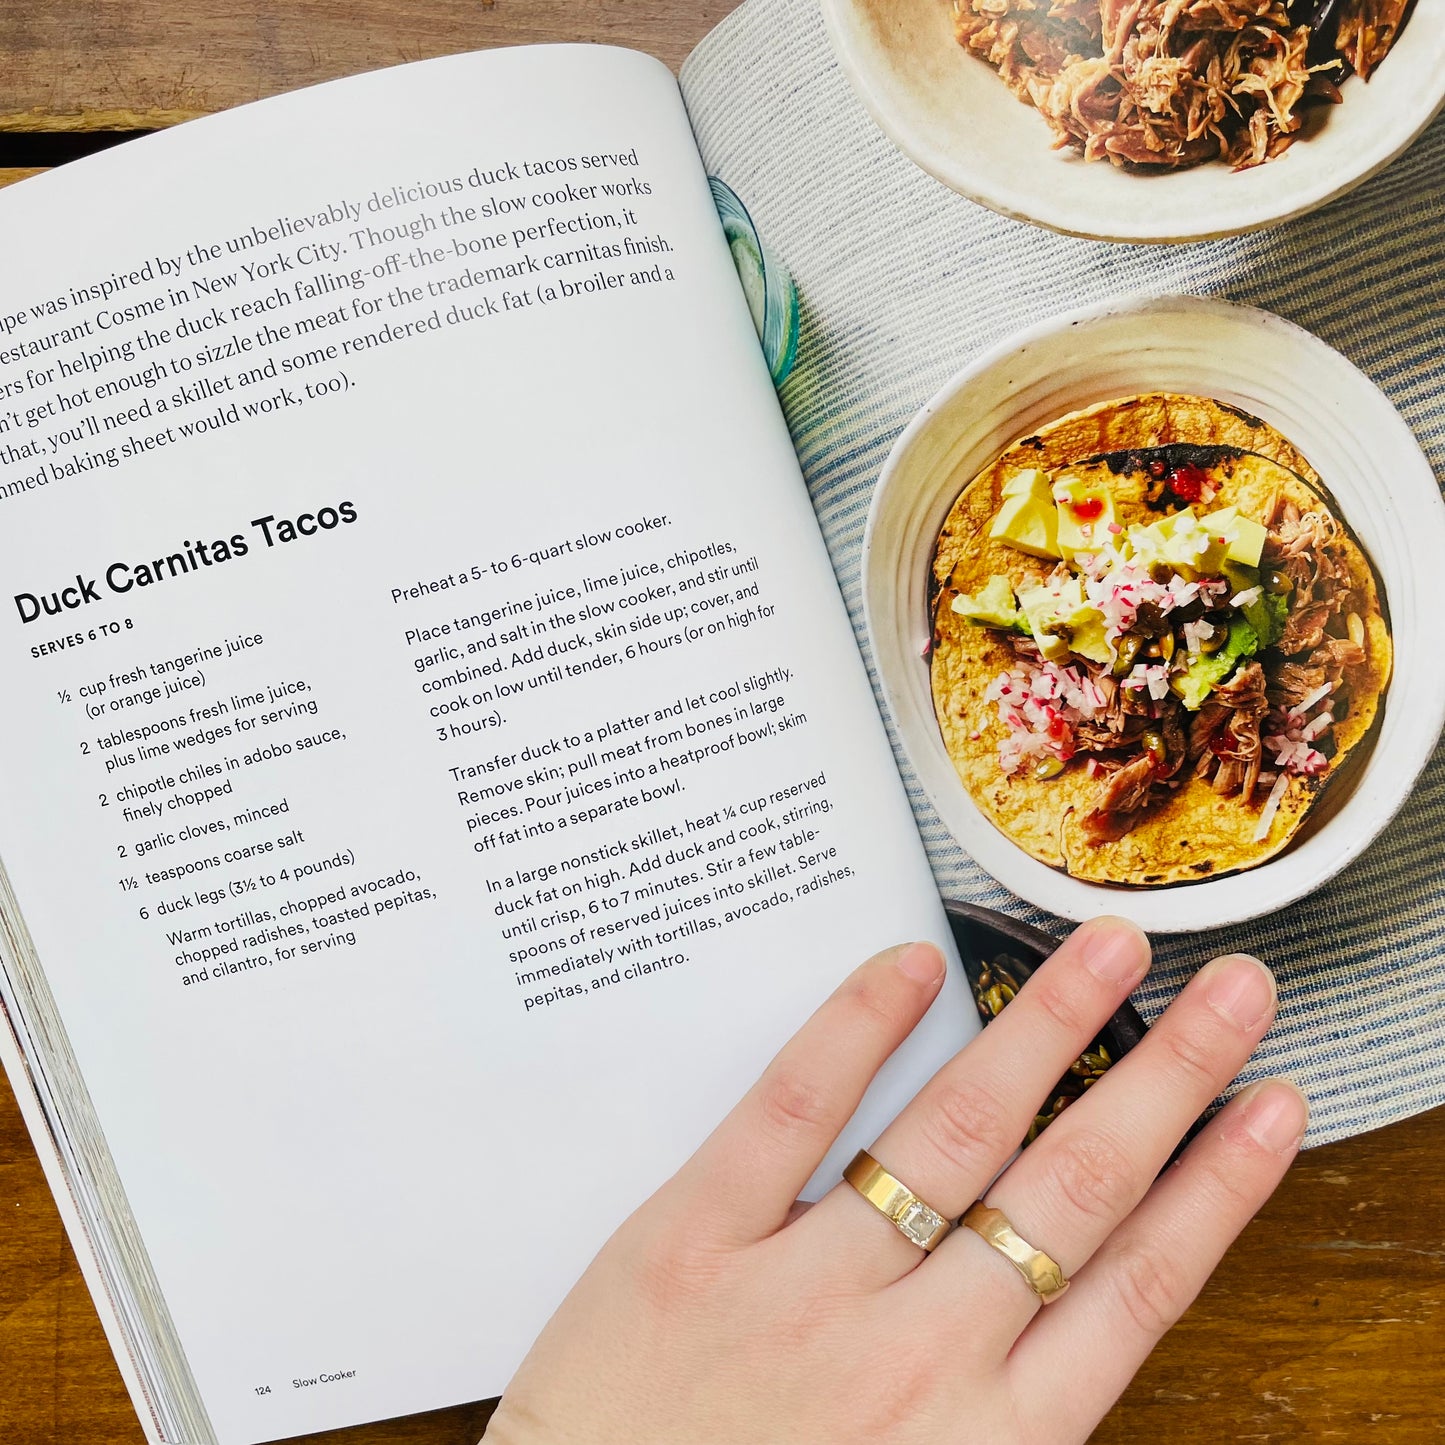 Martha Stewart's Slow Cooker Cookbook